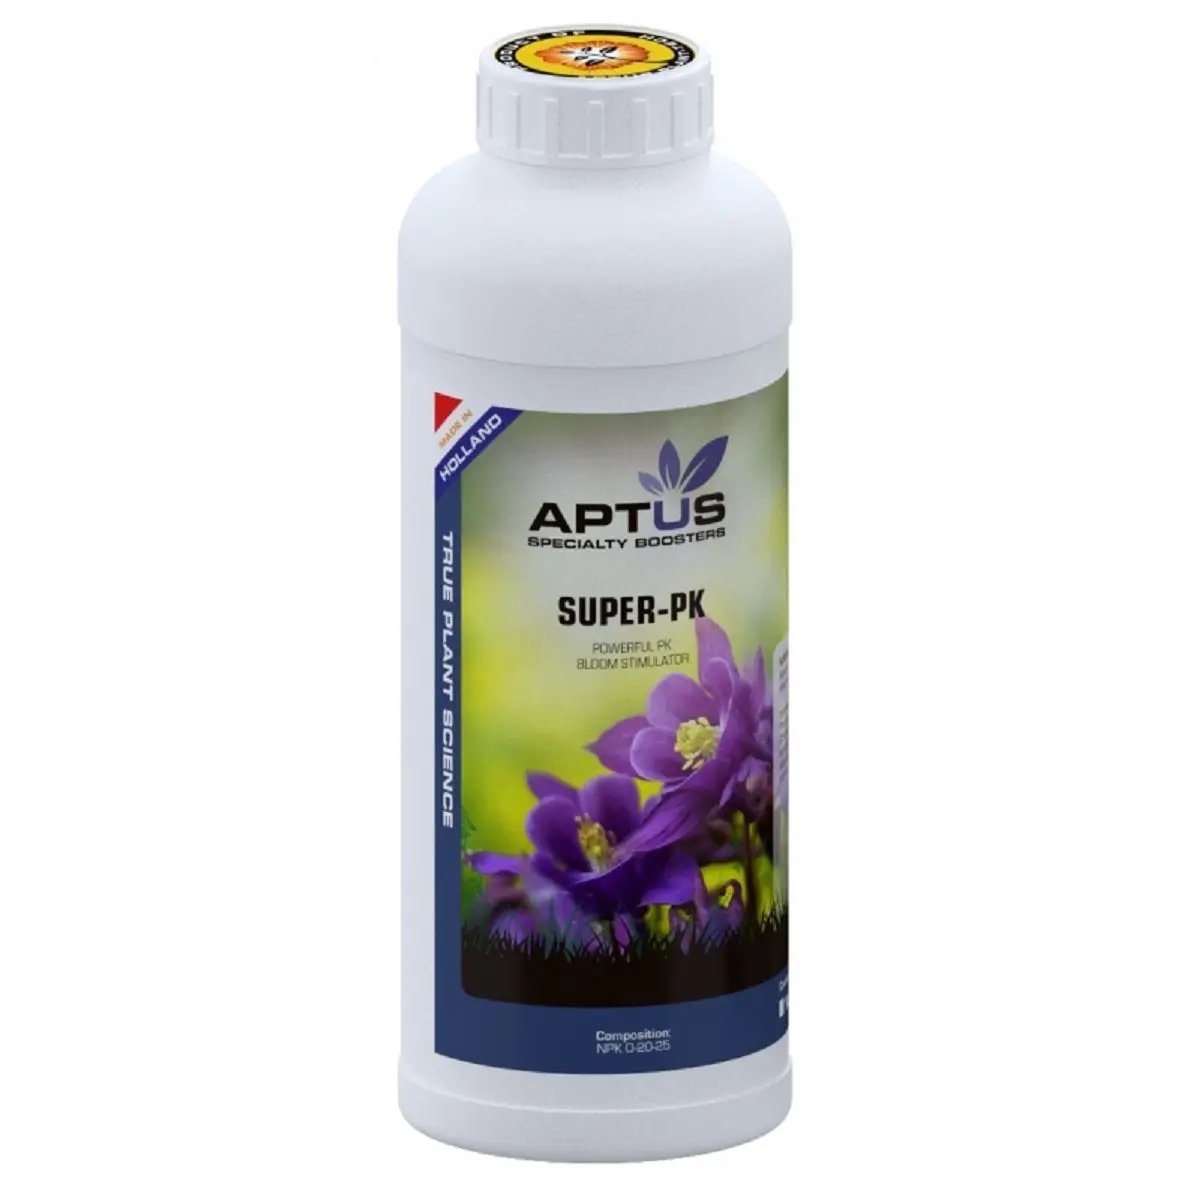 Booster de floraison Aptus Super PK 1 litre